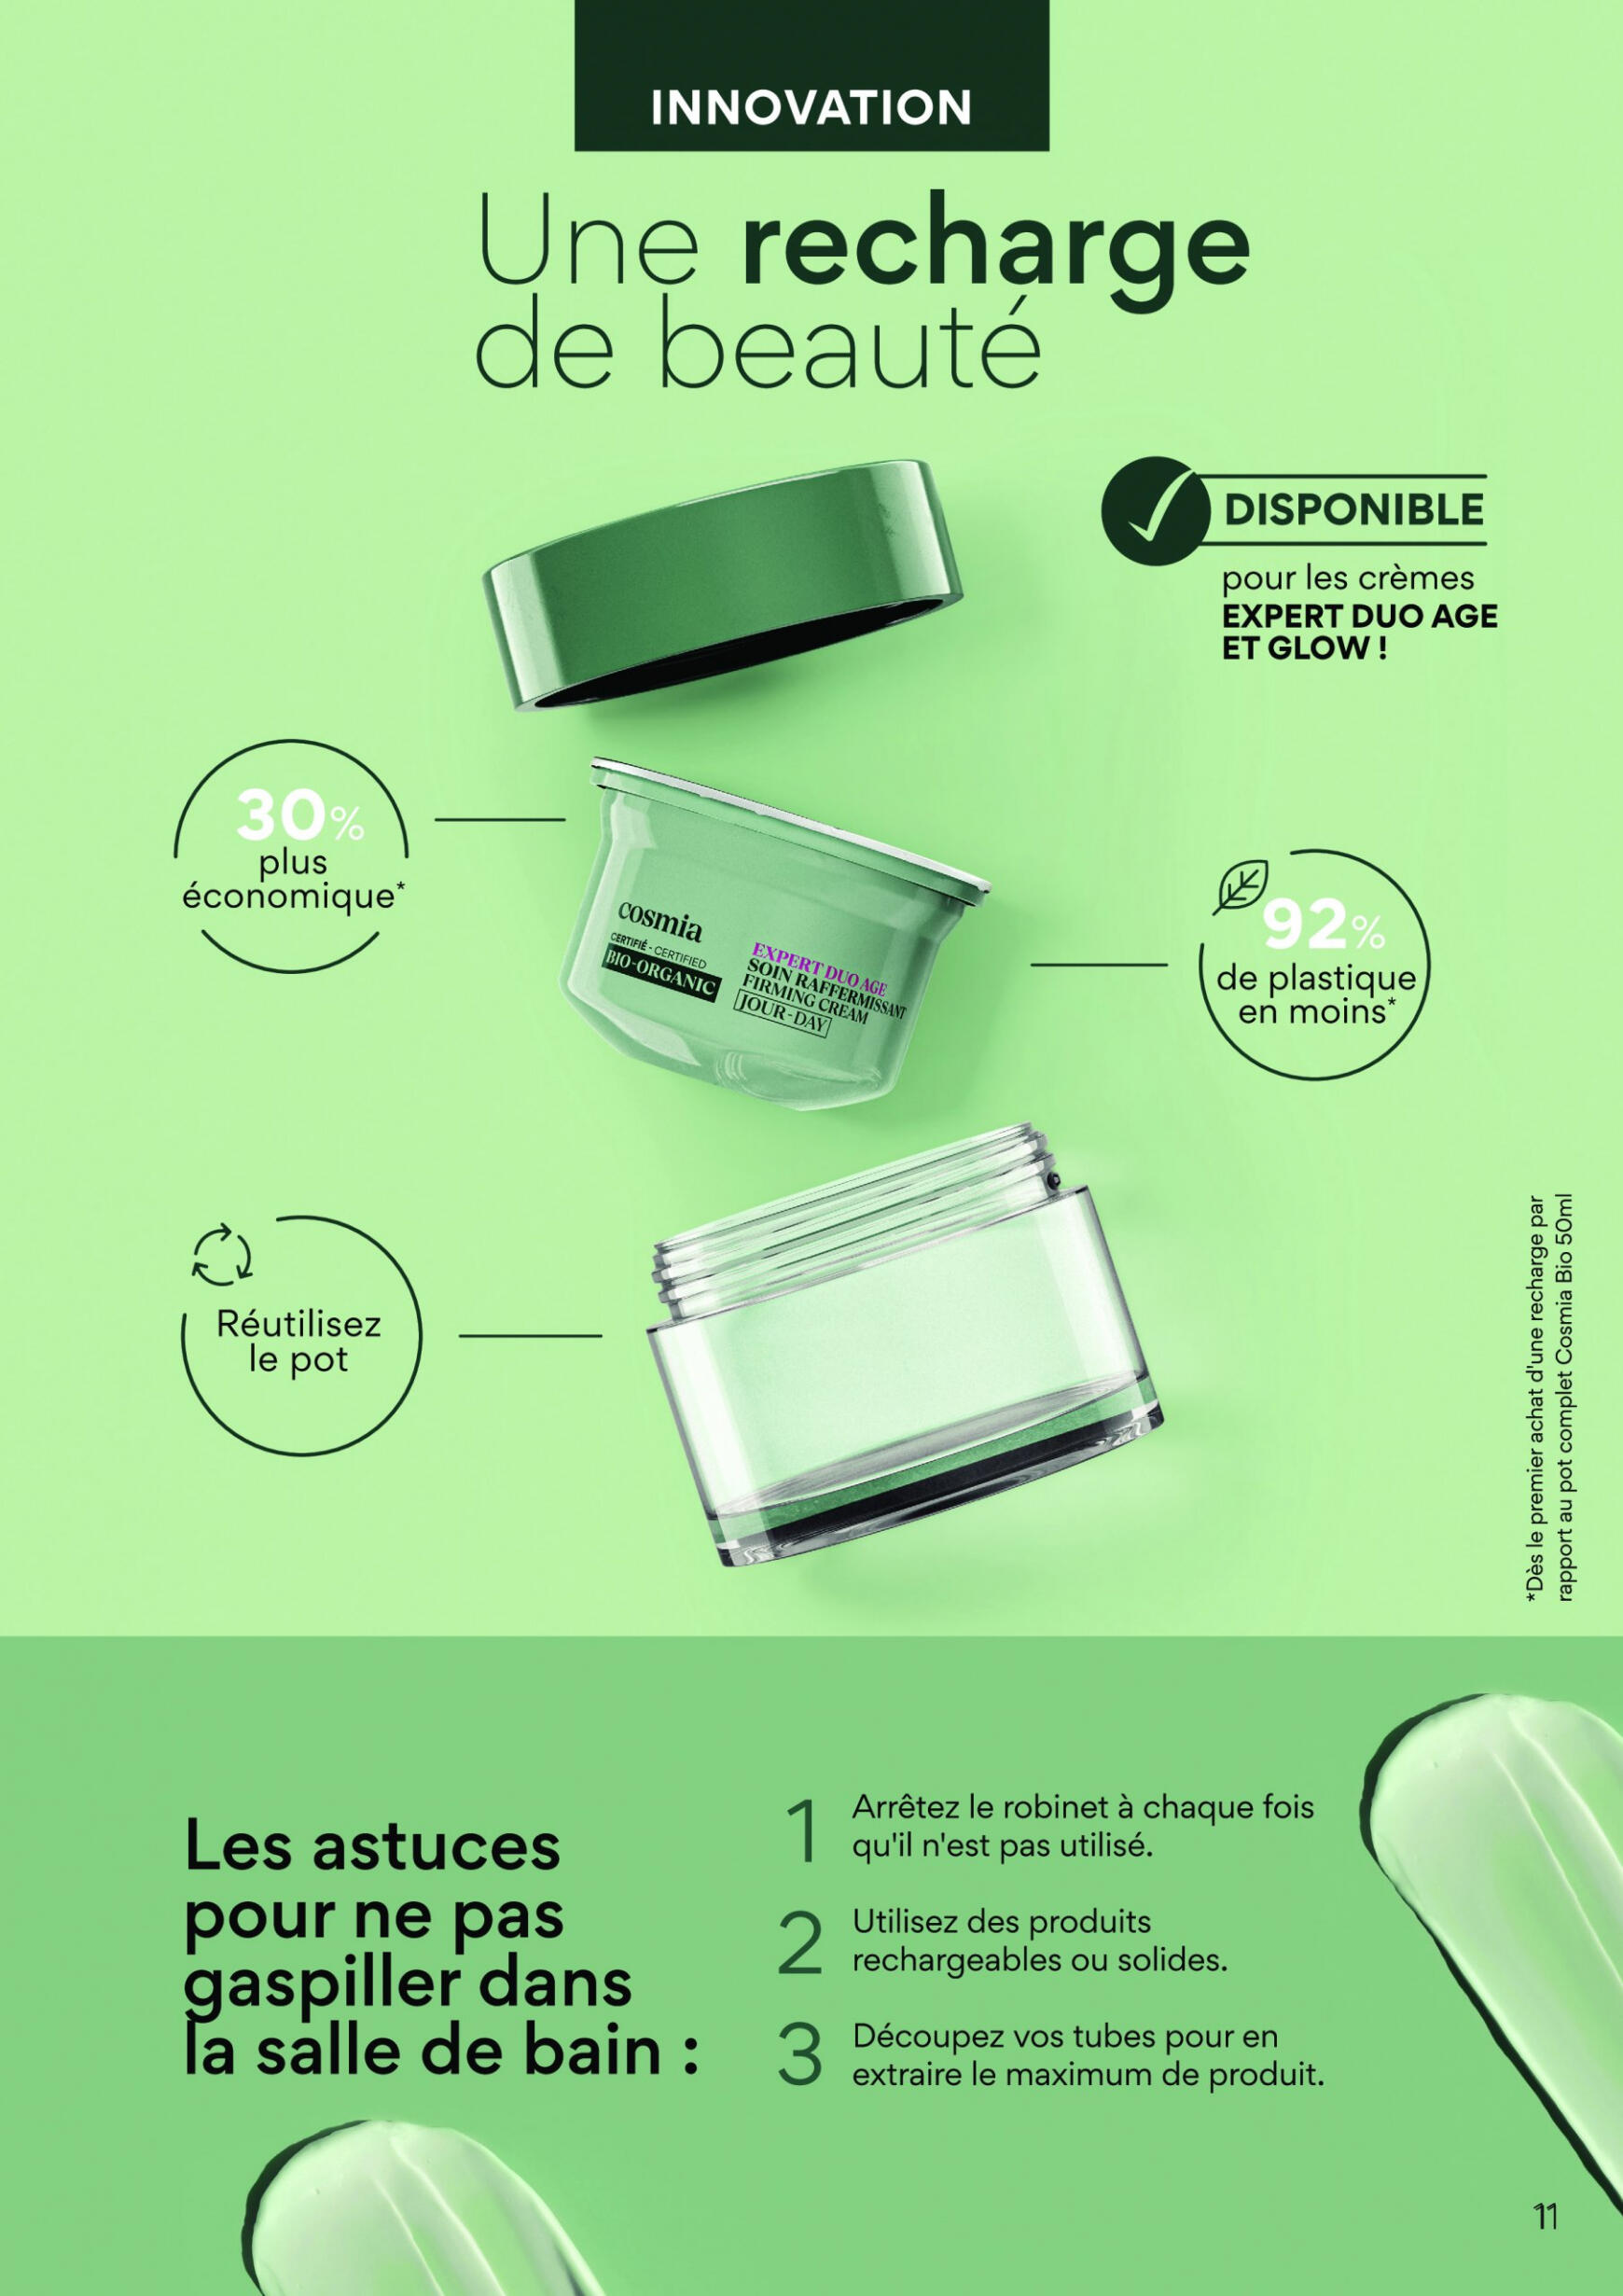 auchan - Auchan - Découvrez nos dernières nouveautés Cosmia folder huidig 27.05. - 20.06. - page: 11